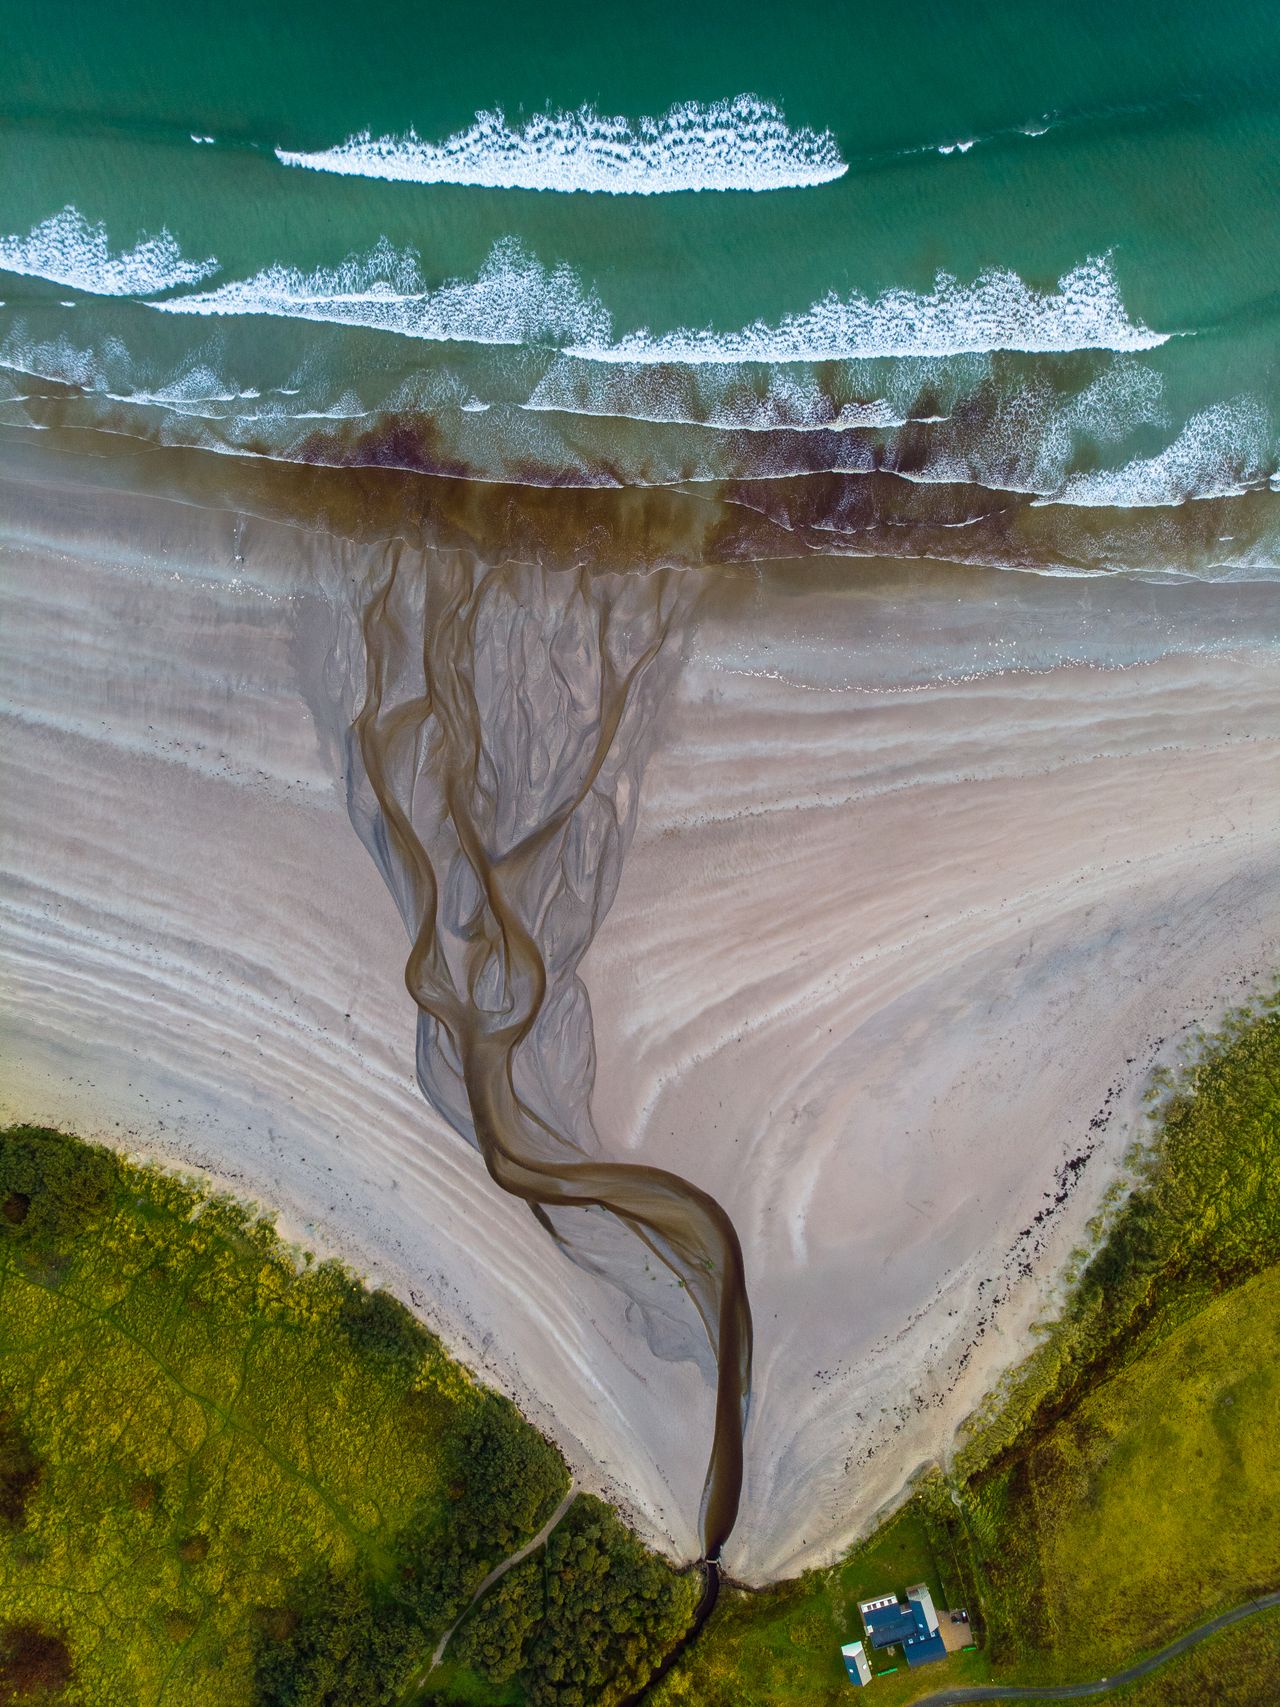 Ποτάμι ενώ εκβάλλει στην παραλία Μαρμπλ Χιλ, λίγο πριν την ανατολή του ηλίου.Ο φωτογράφος Οζγκούν Οζντεμίρ, της έδωσε τον τίτλο, «Η αορτή της Μαρμπλ Χιλ».